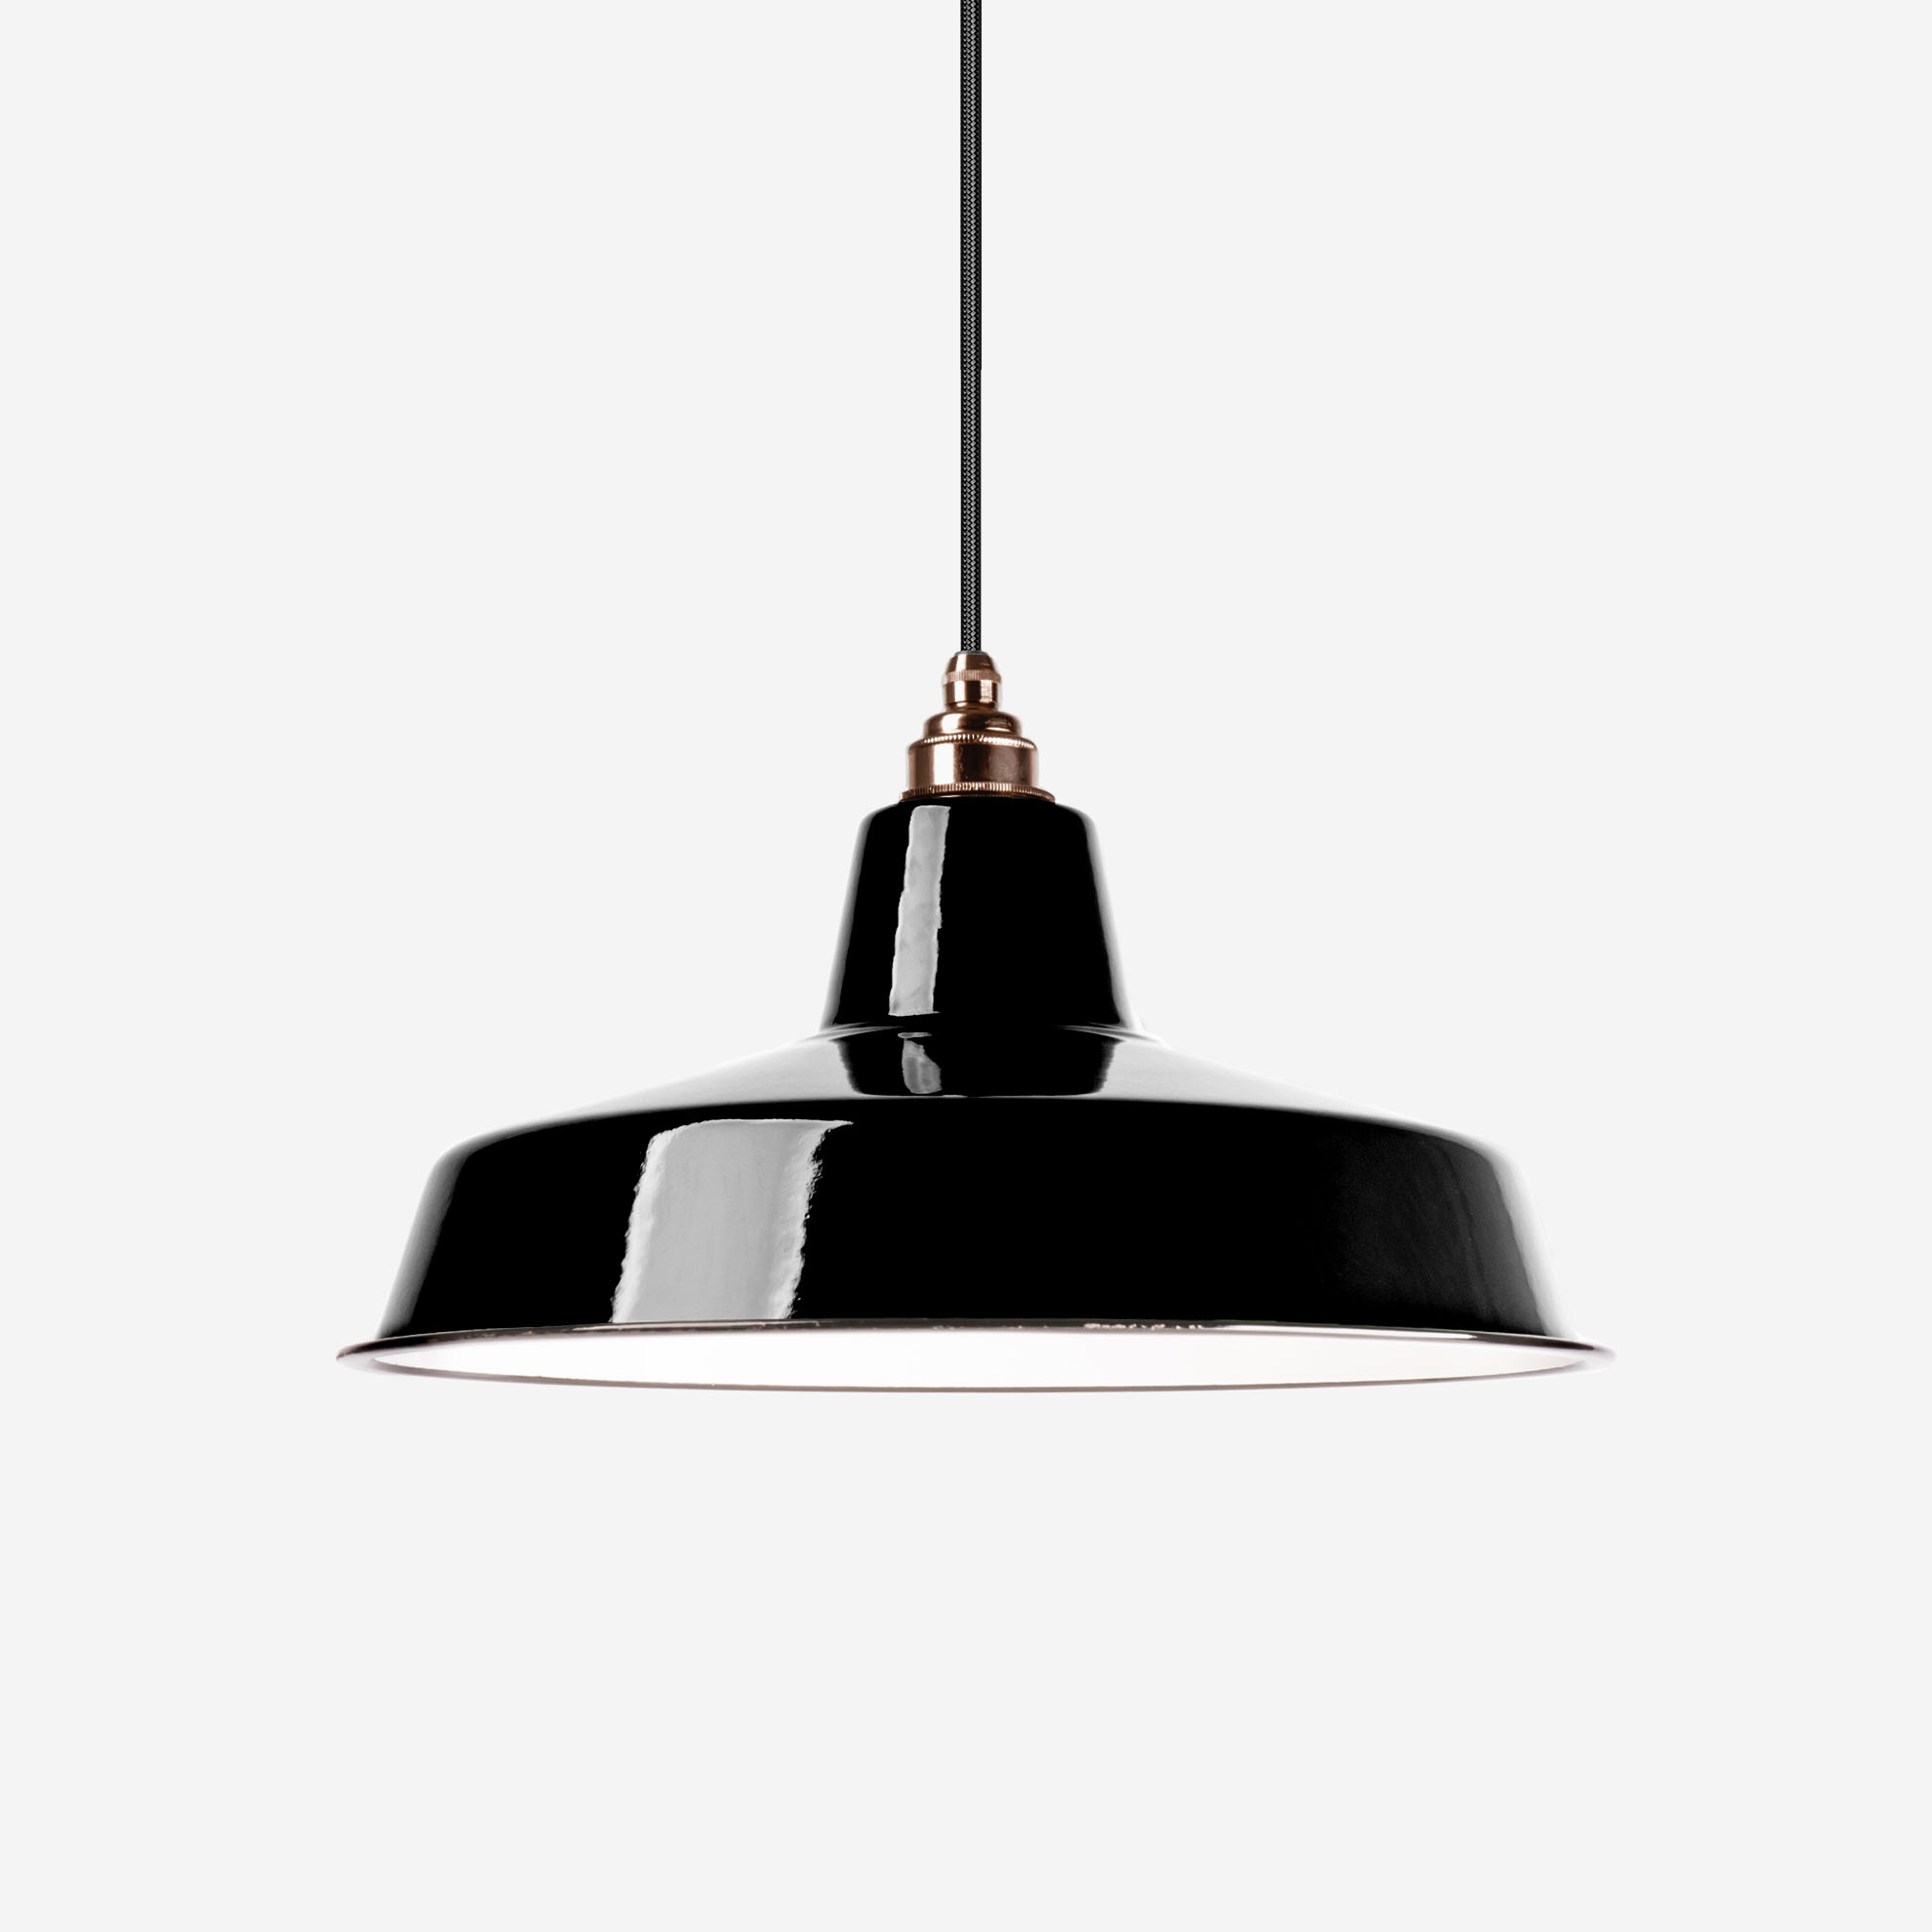 350mm Fassung aus Messing Industrie-Lampe Vintage Lampenschirm Emaille emailliert Antik-gebürstet schwarz Fabriklampe inkl 